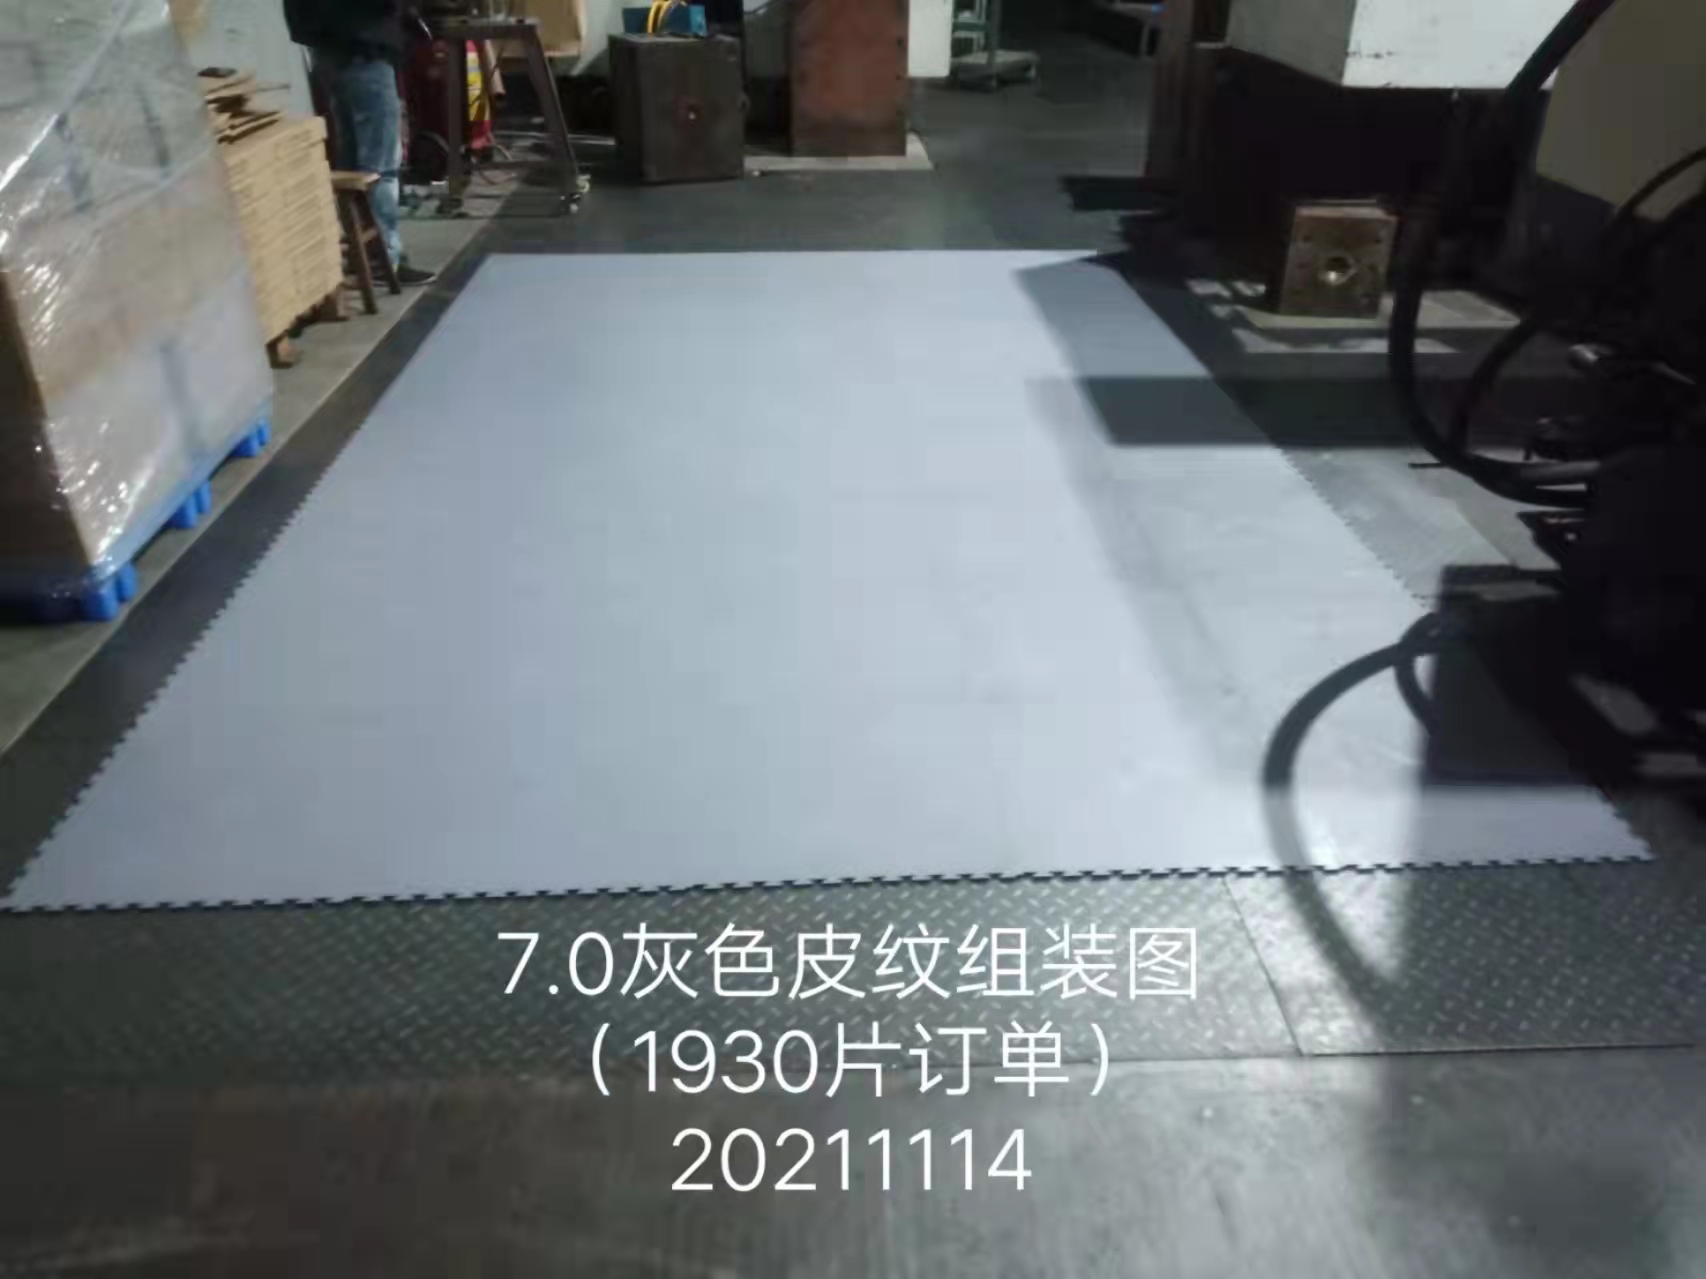 惠州7.0灰色皮纹地板供应商、批发价、定做、厂家【东莞市顺泰塑胶制品有限公司】